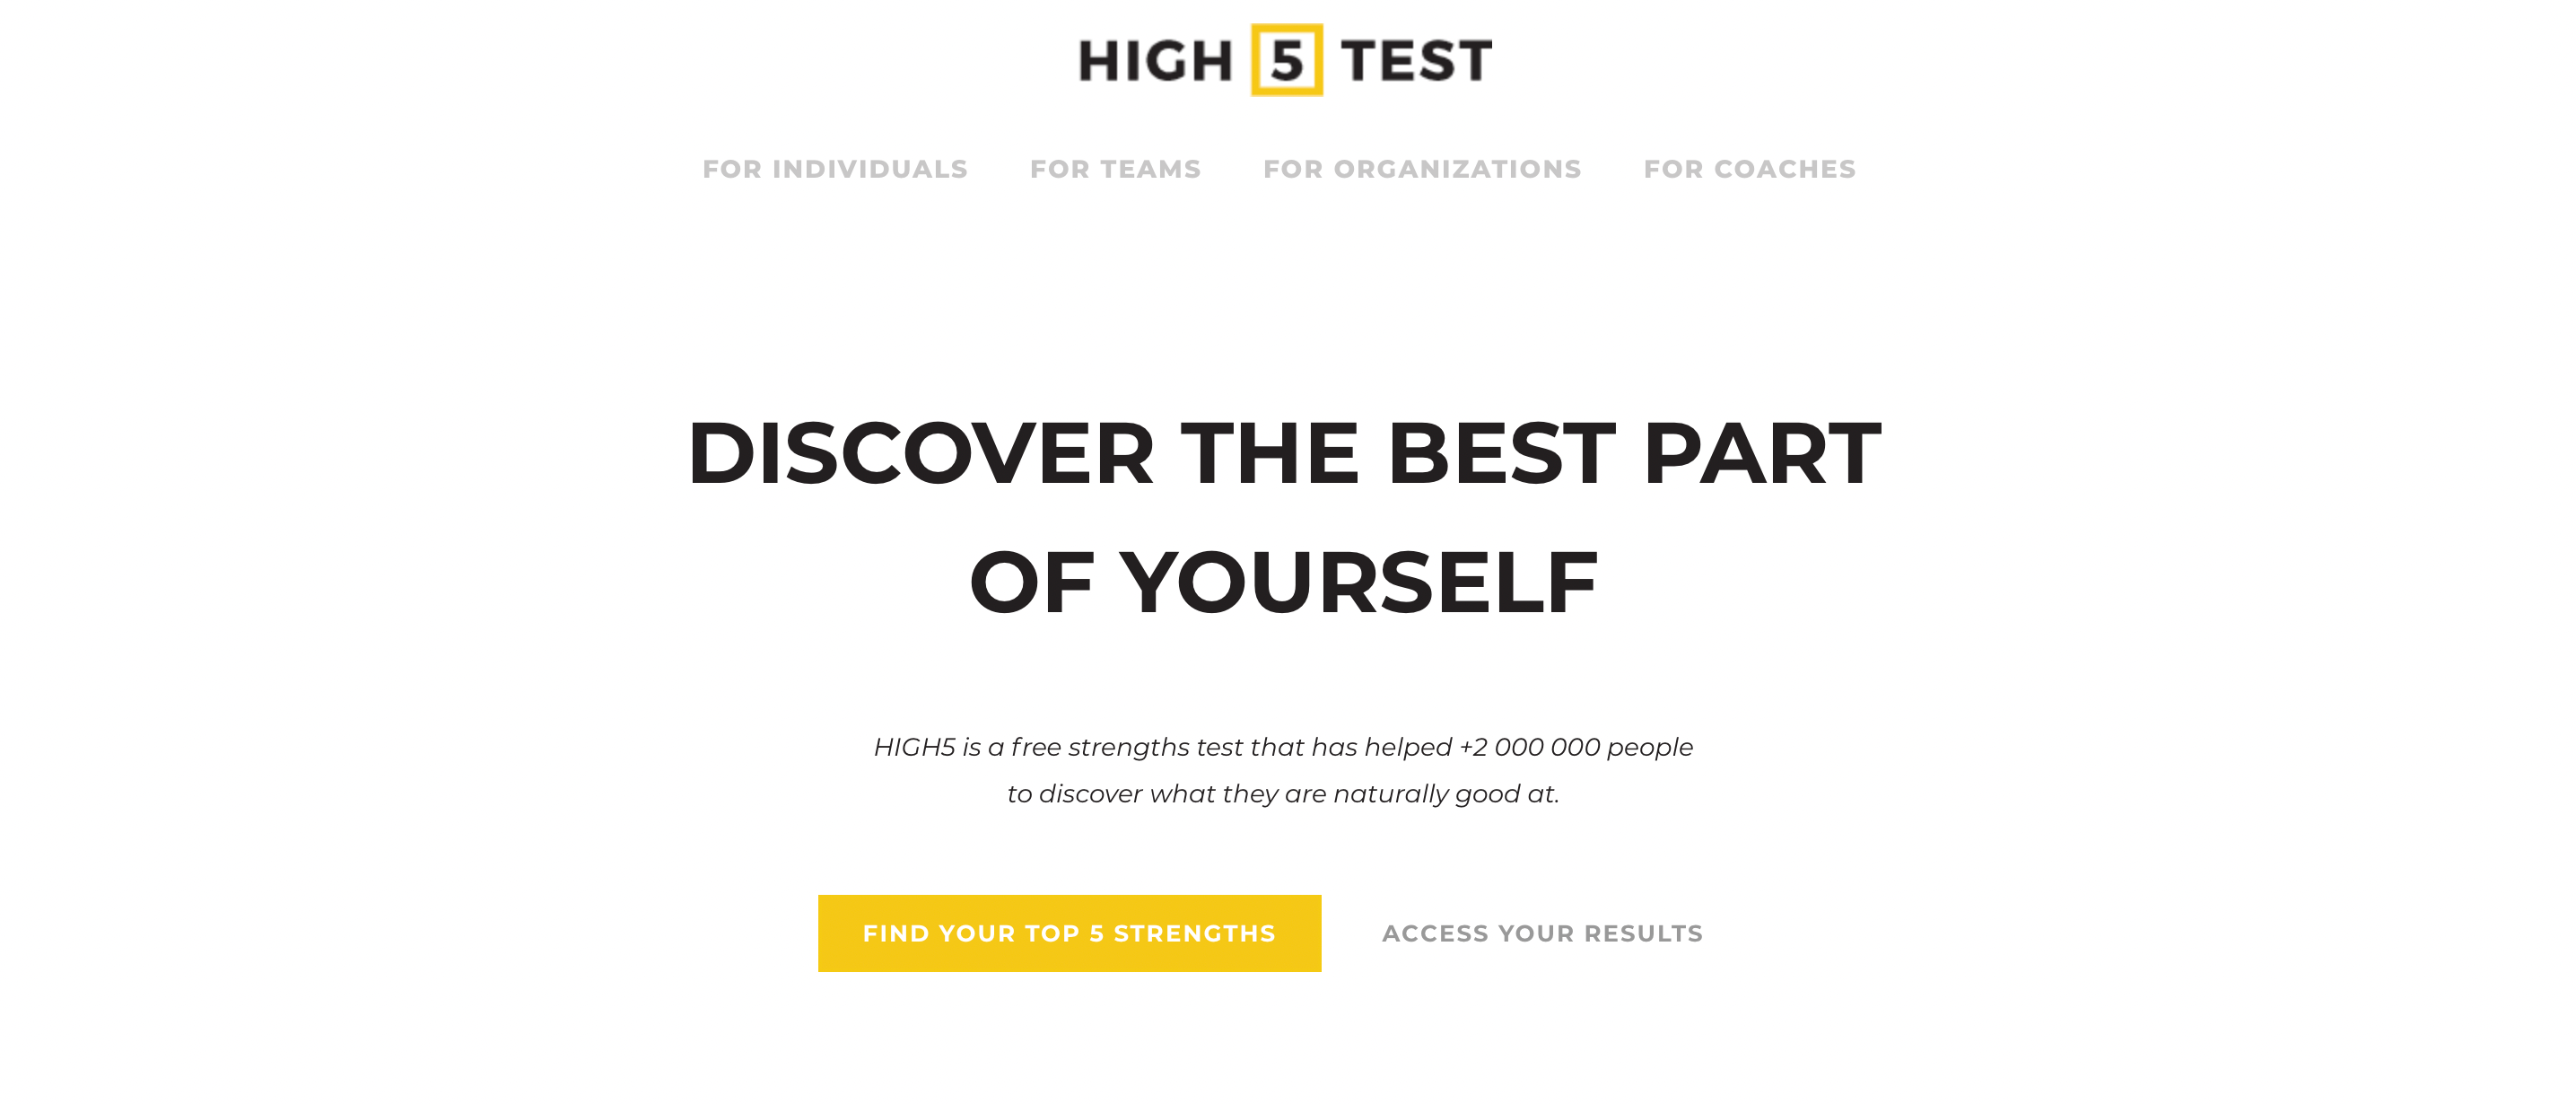 High5 Homepage 1 - 4 test online sui punti di forza che puoi eseguire per identificare i tuoi punti di forza